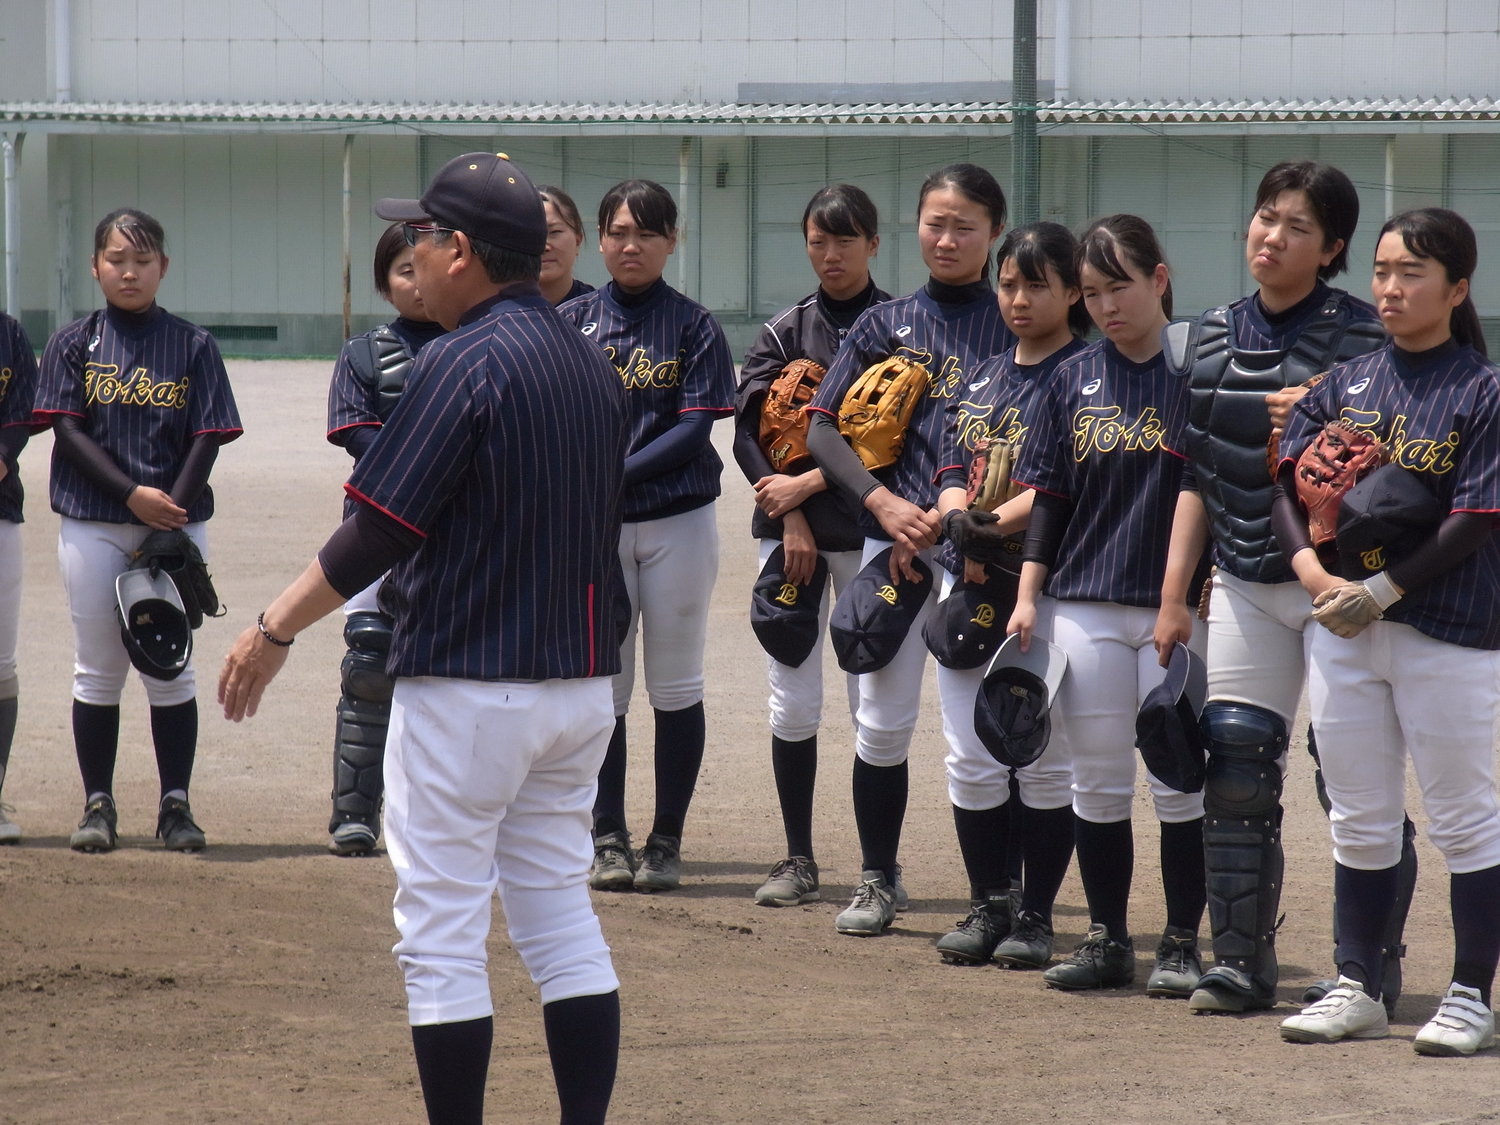 女子野球が広がることで男子野球の仕組みも 静岡初の女子高校野球部 監督 校長が取り払う先入観と固定観念とは 2 4 高校野球 Number Web ナンバー